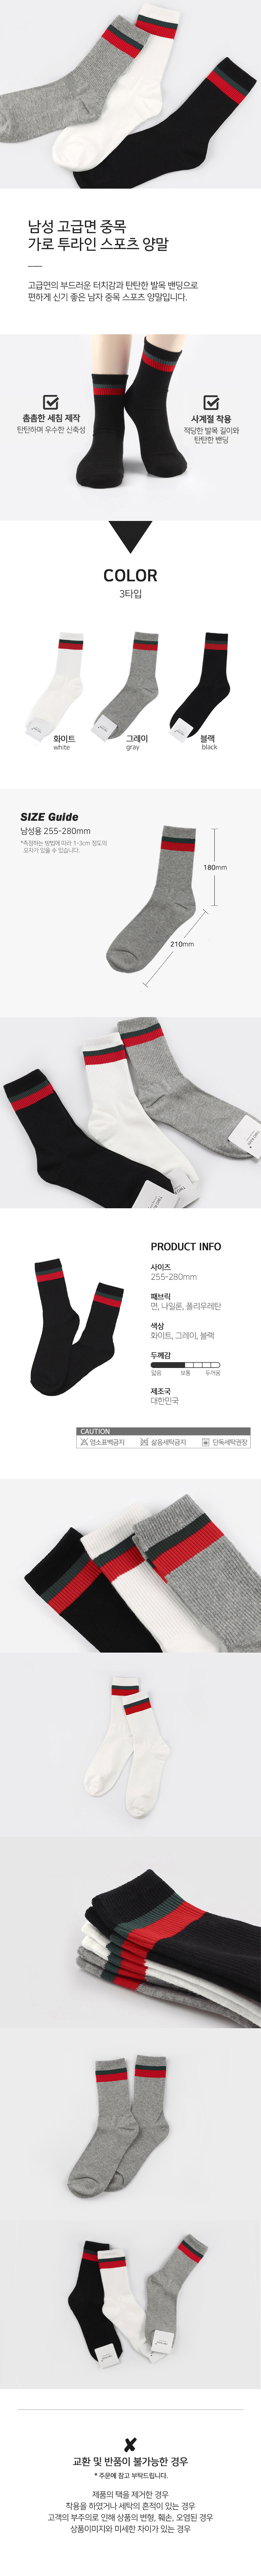 socks_00112.jpg